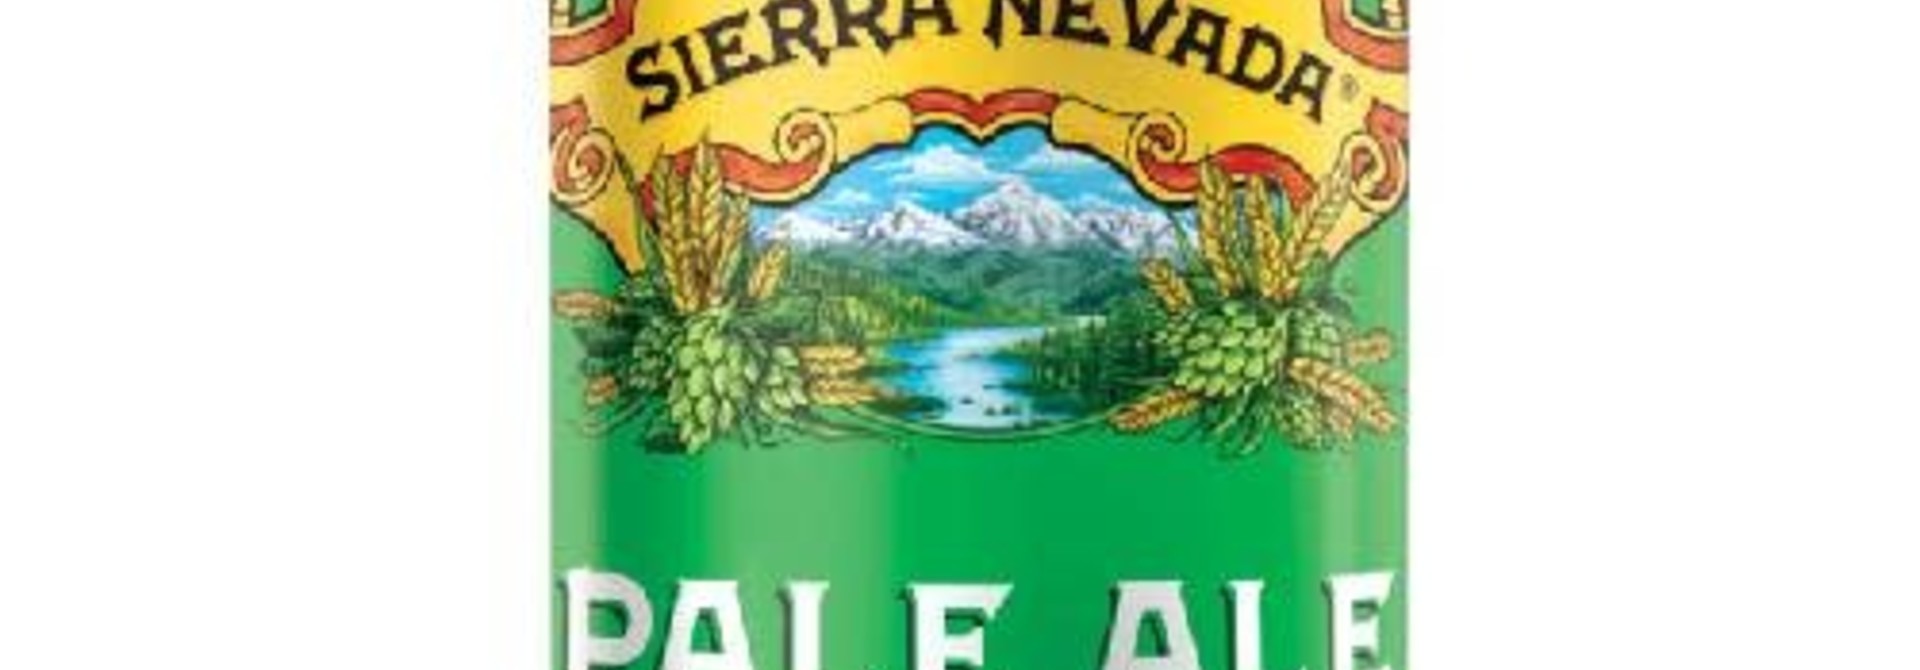 Sierra Nevada Pale Ale blik 35 cl 5,6%